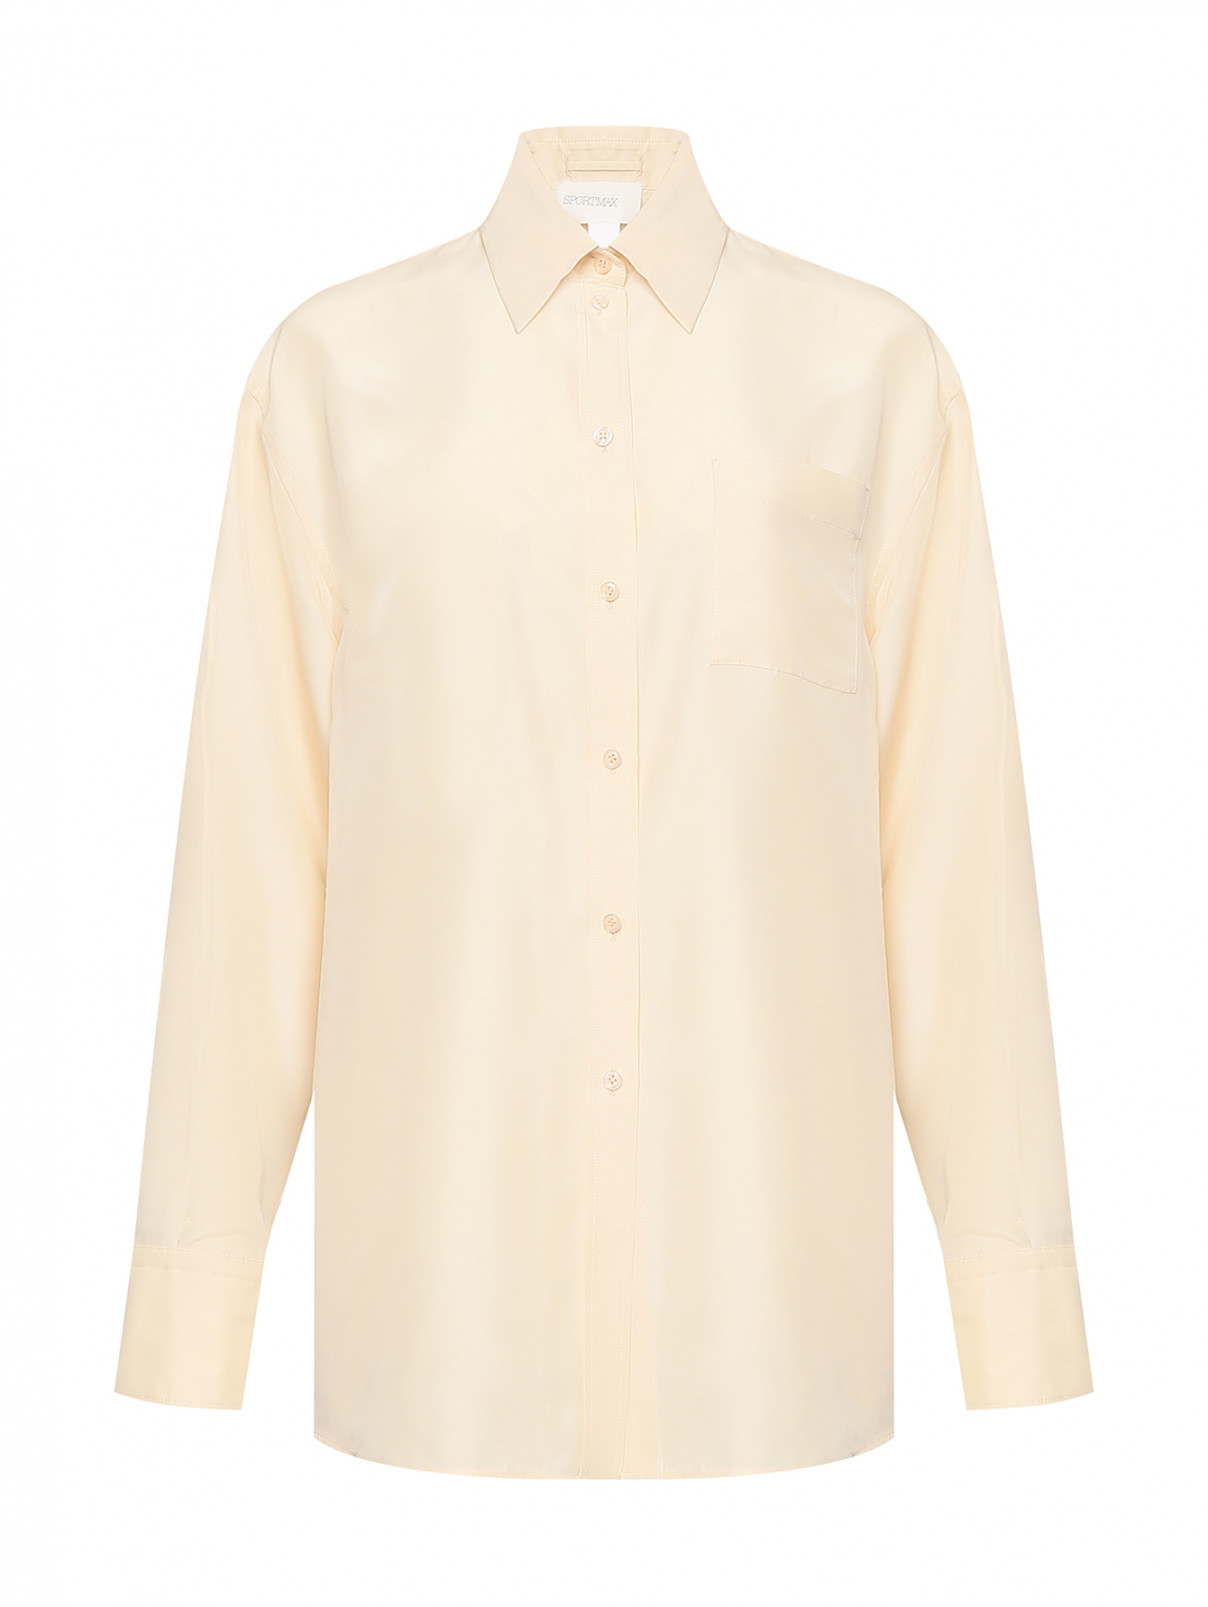 Рубашка из шелка Sportmax  –  Общий вид  – Цвет:  Бежевый